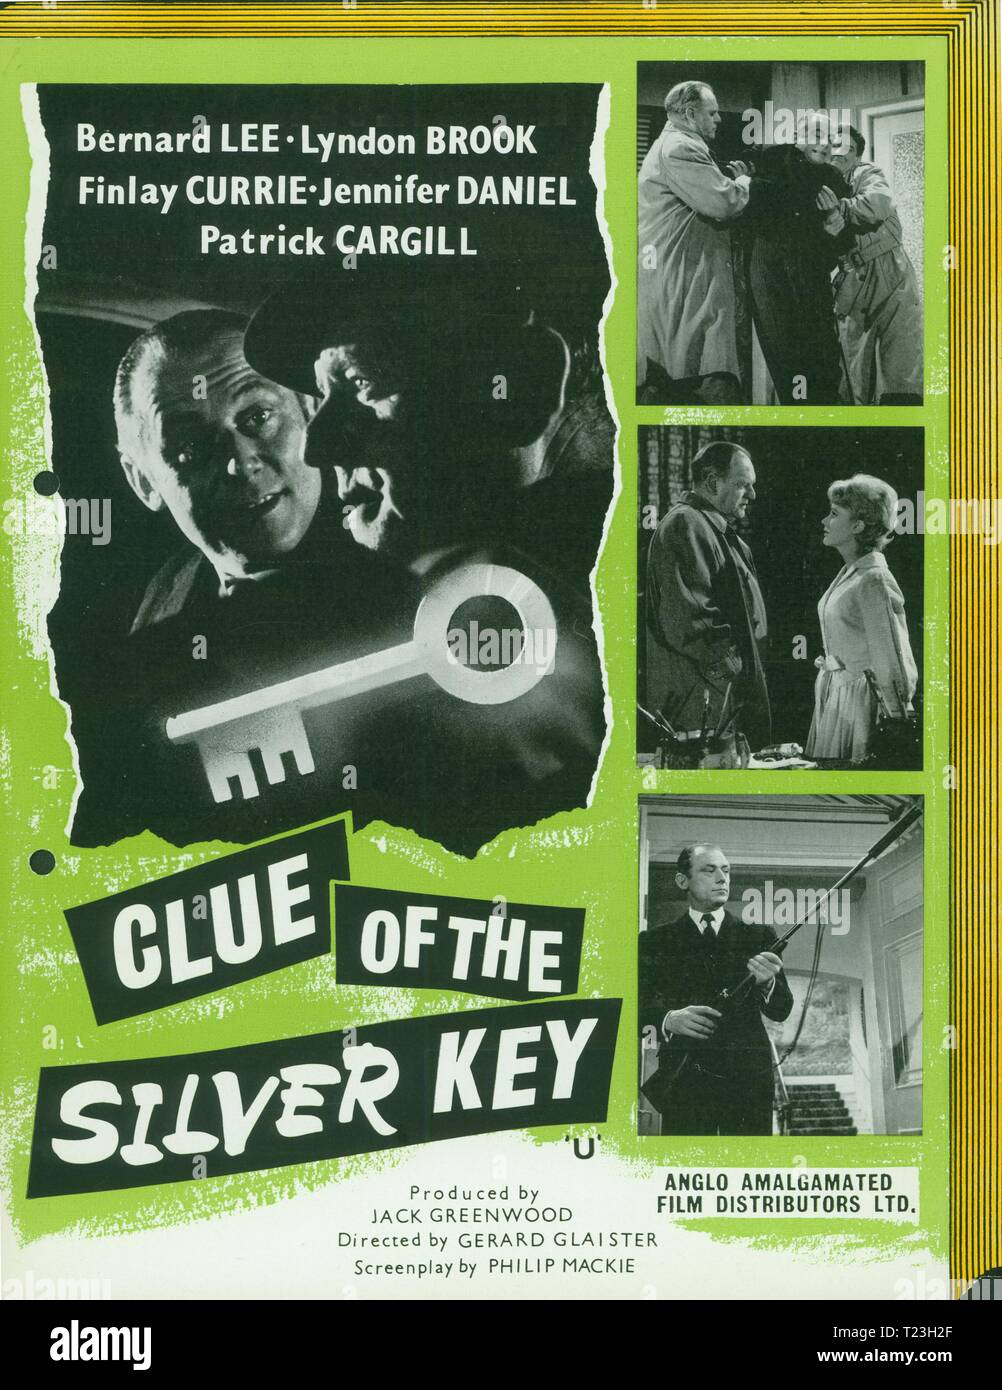 Indizio della chiave d'argento (1961) Un Edgar Wallace mistero thriller. Informazioni pubblicitarie, film poster, Data: 1961 Foto Stock